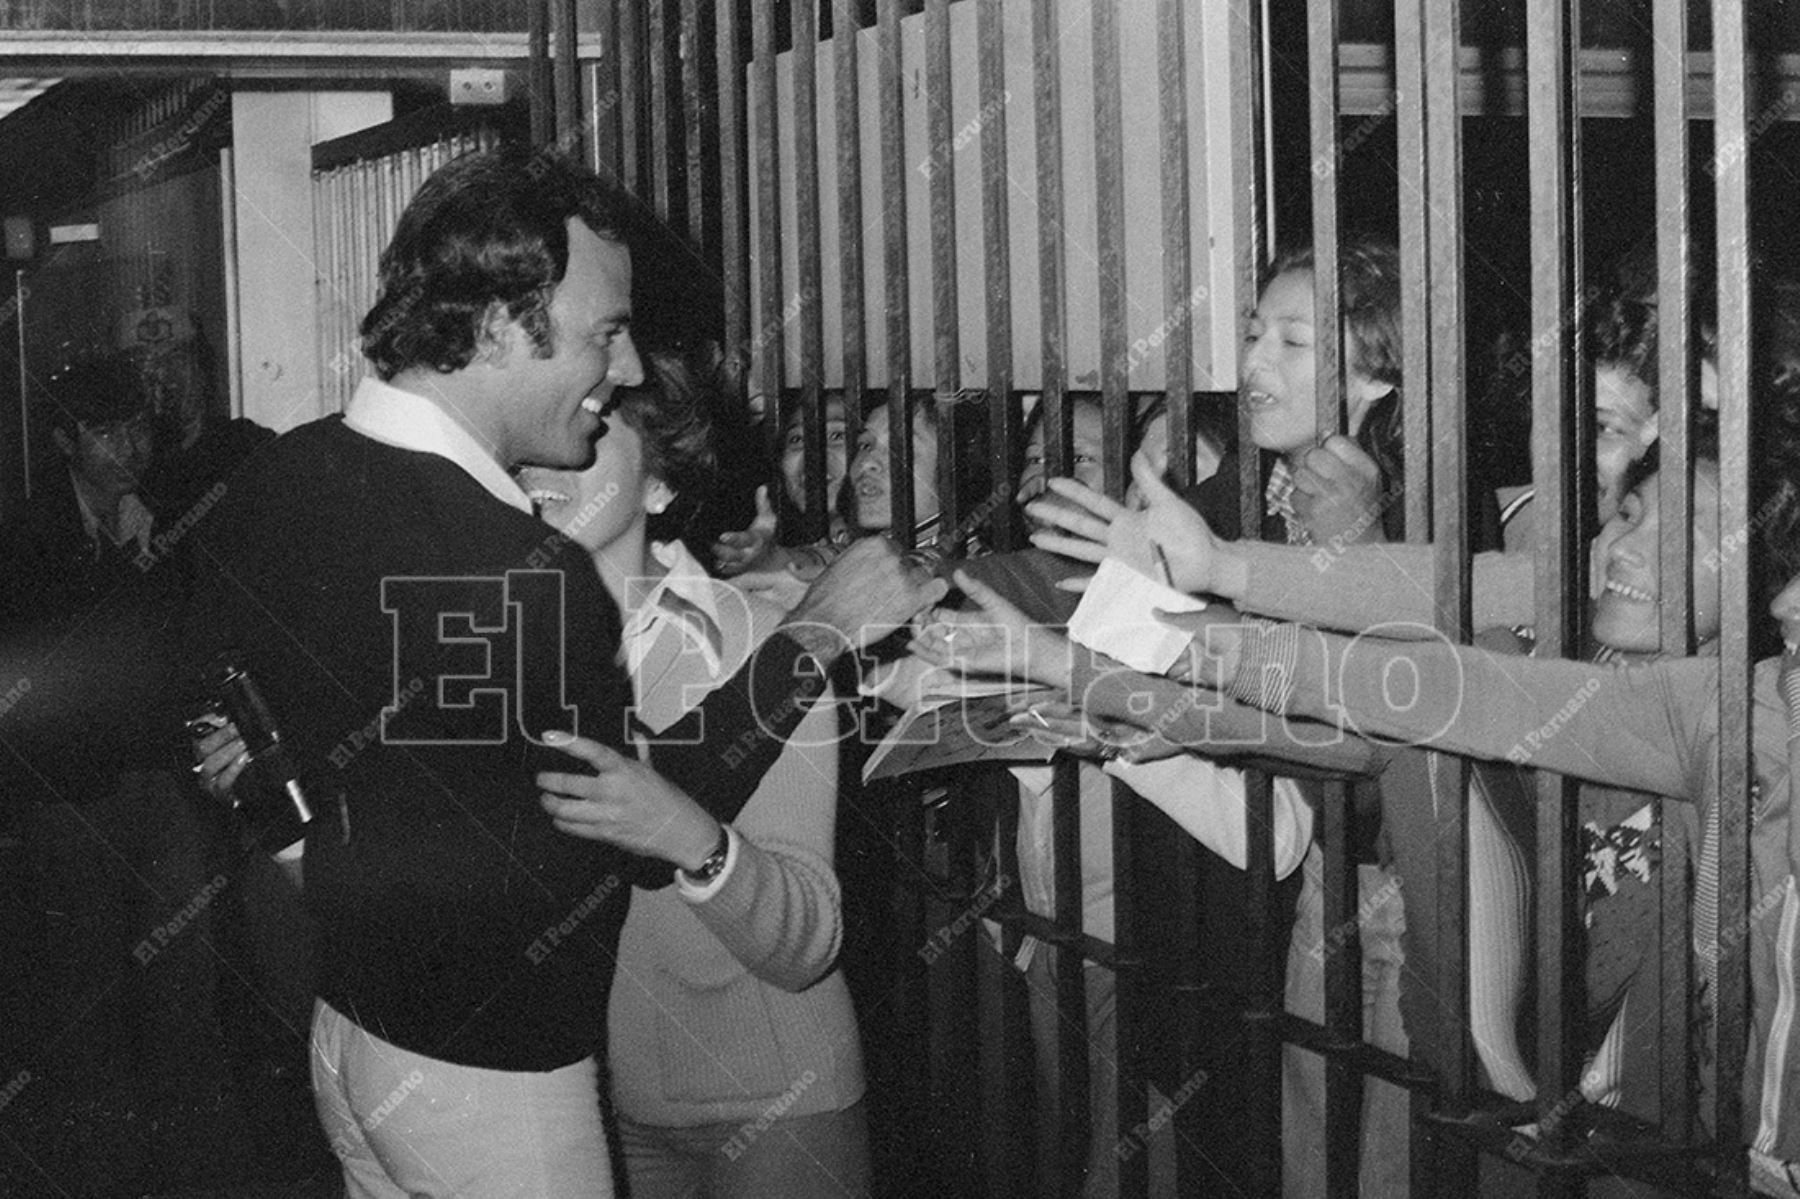 Callao - 4 octubre 1977 / Julio Iglesias saluda a sus fans a su llegada a nuestro país. El cantante español se presentará en un concierto en El Olivar de San Isidro.  Foto: Archivo Histórico de El Peruano / Leoncio Mariscal